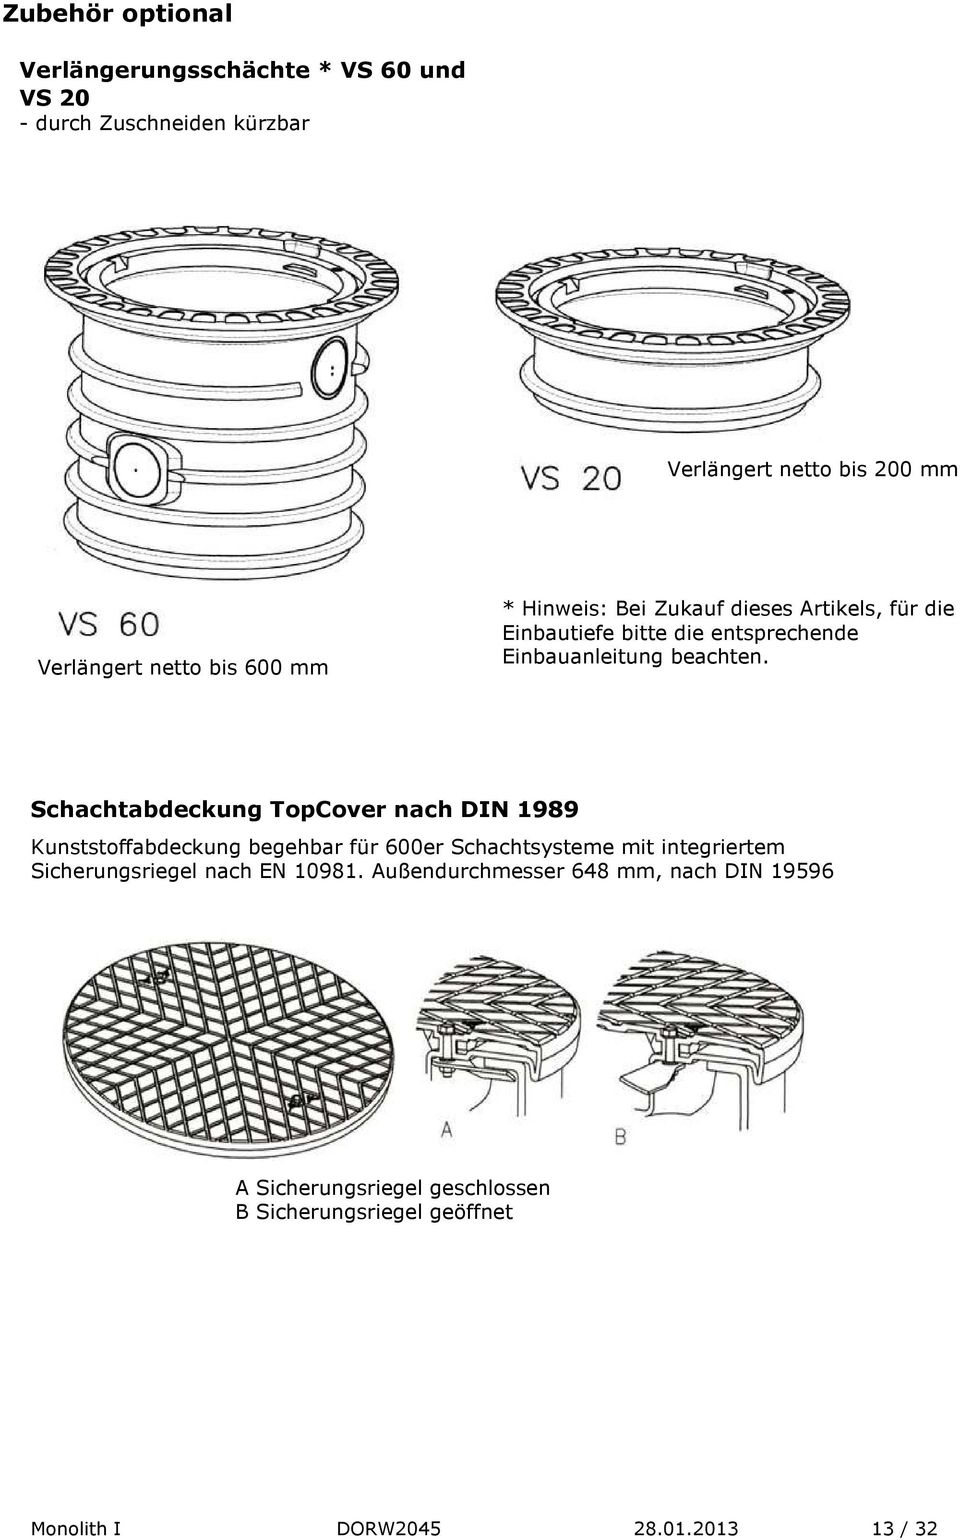 Schachtabdeckung TopCover nach DIN 1989 Kunststoffabdeckung begehbar für 600er Schachtsysteme mit integriertem Sicherungsriegel nach